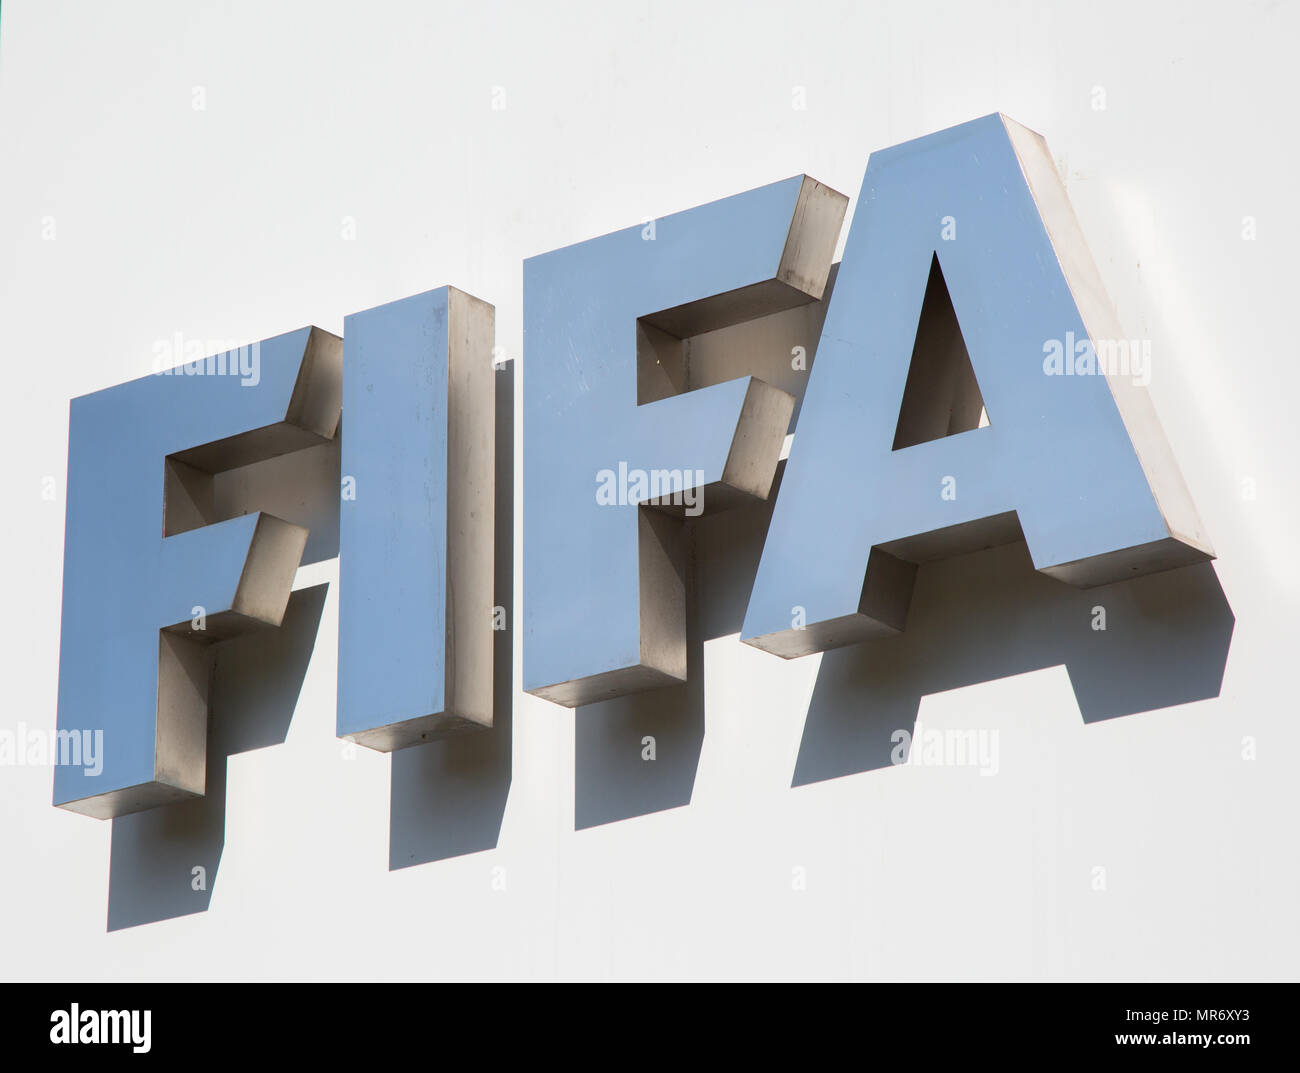 ZURICH - 10 avril : Siège de international FIFA football (soccer) association le 10 avril 2016 à Zurich, Suisse. La FIFA est très critizied Banque D'Images